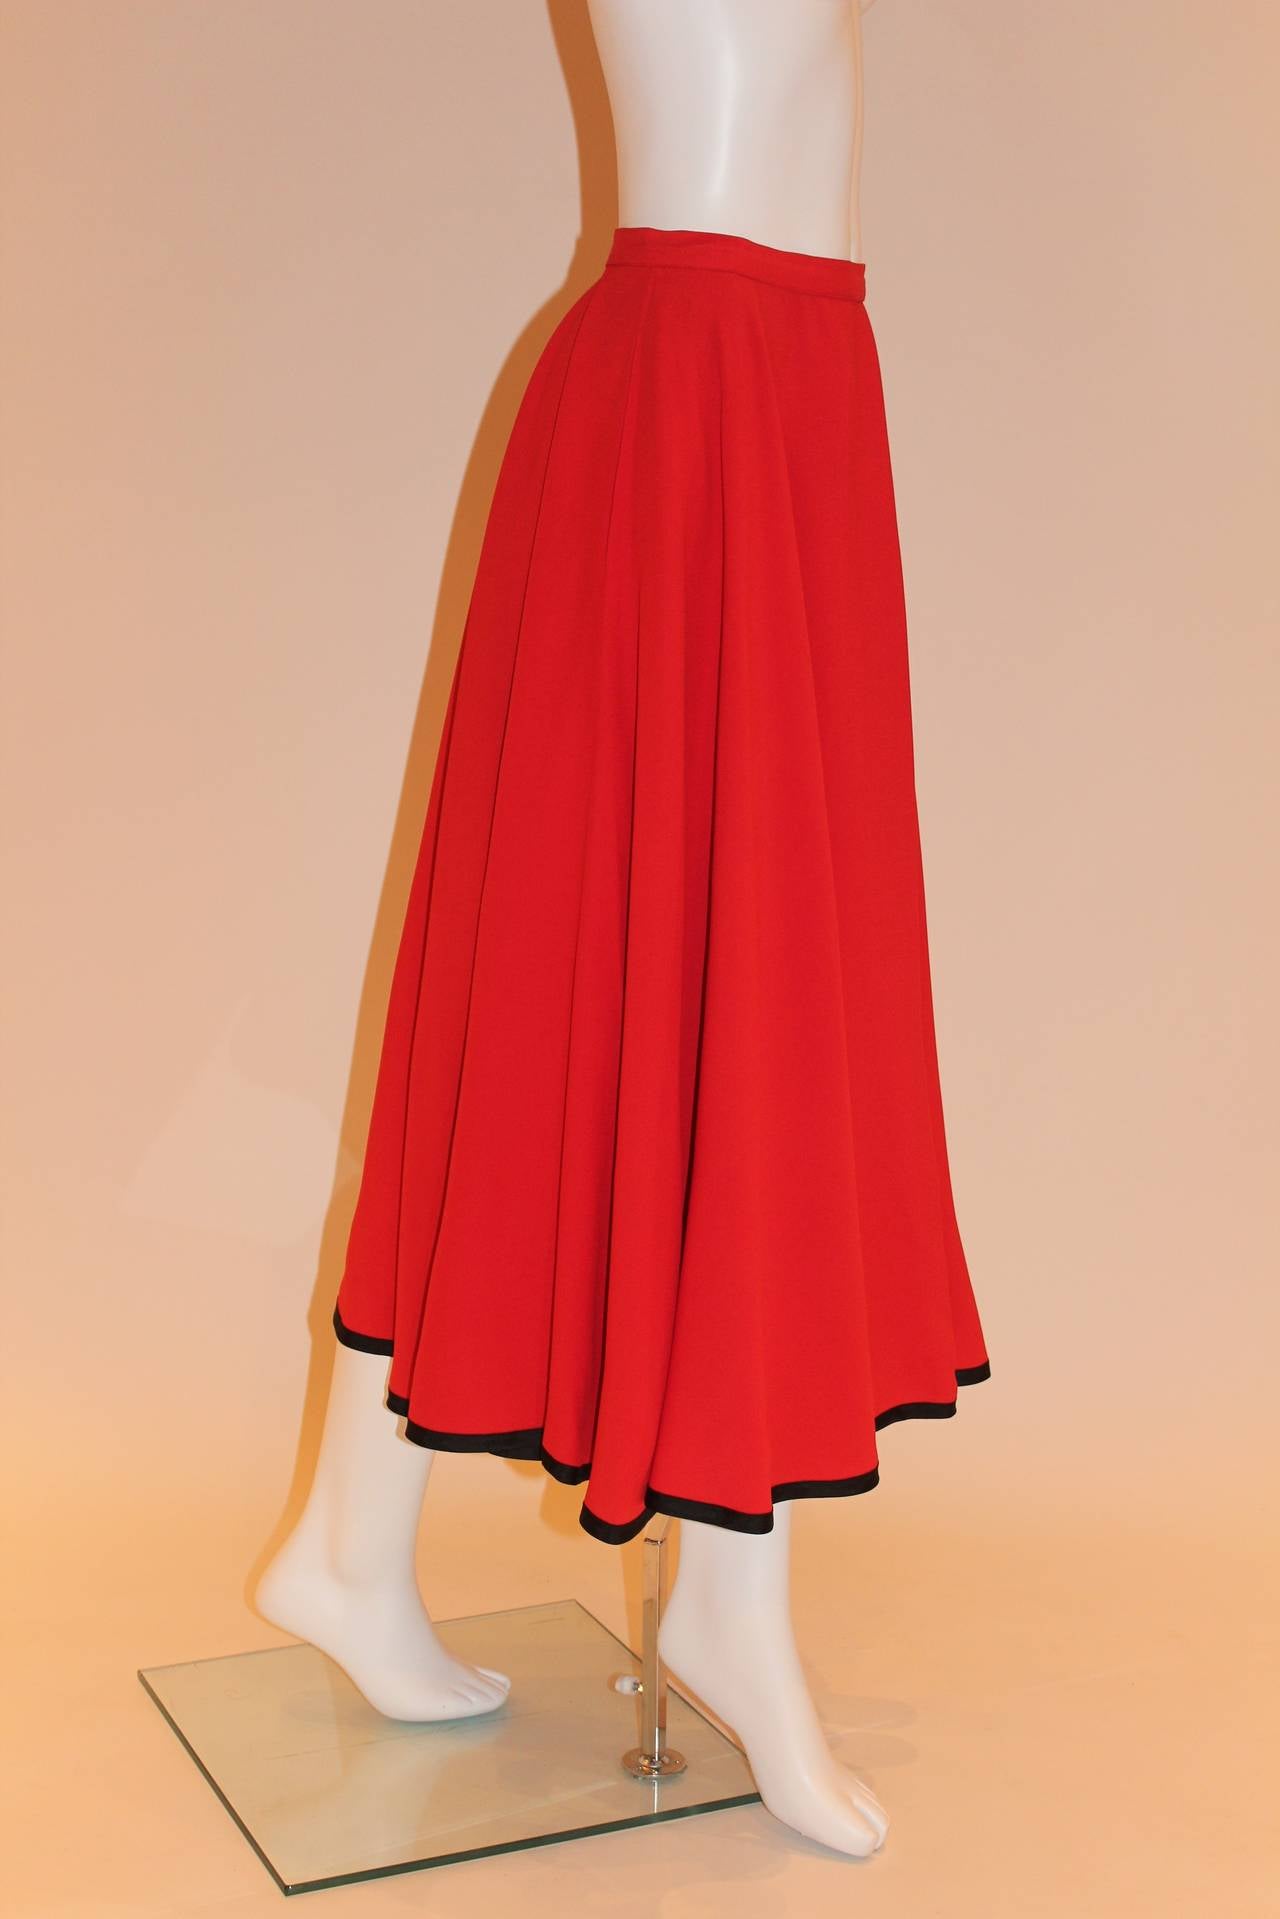 Women's Yves Saint Laurent Rive Gauche Vintage Red Skirt